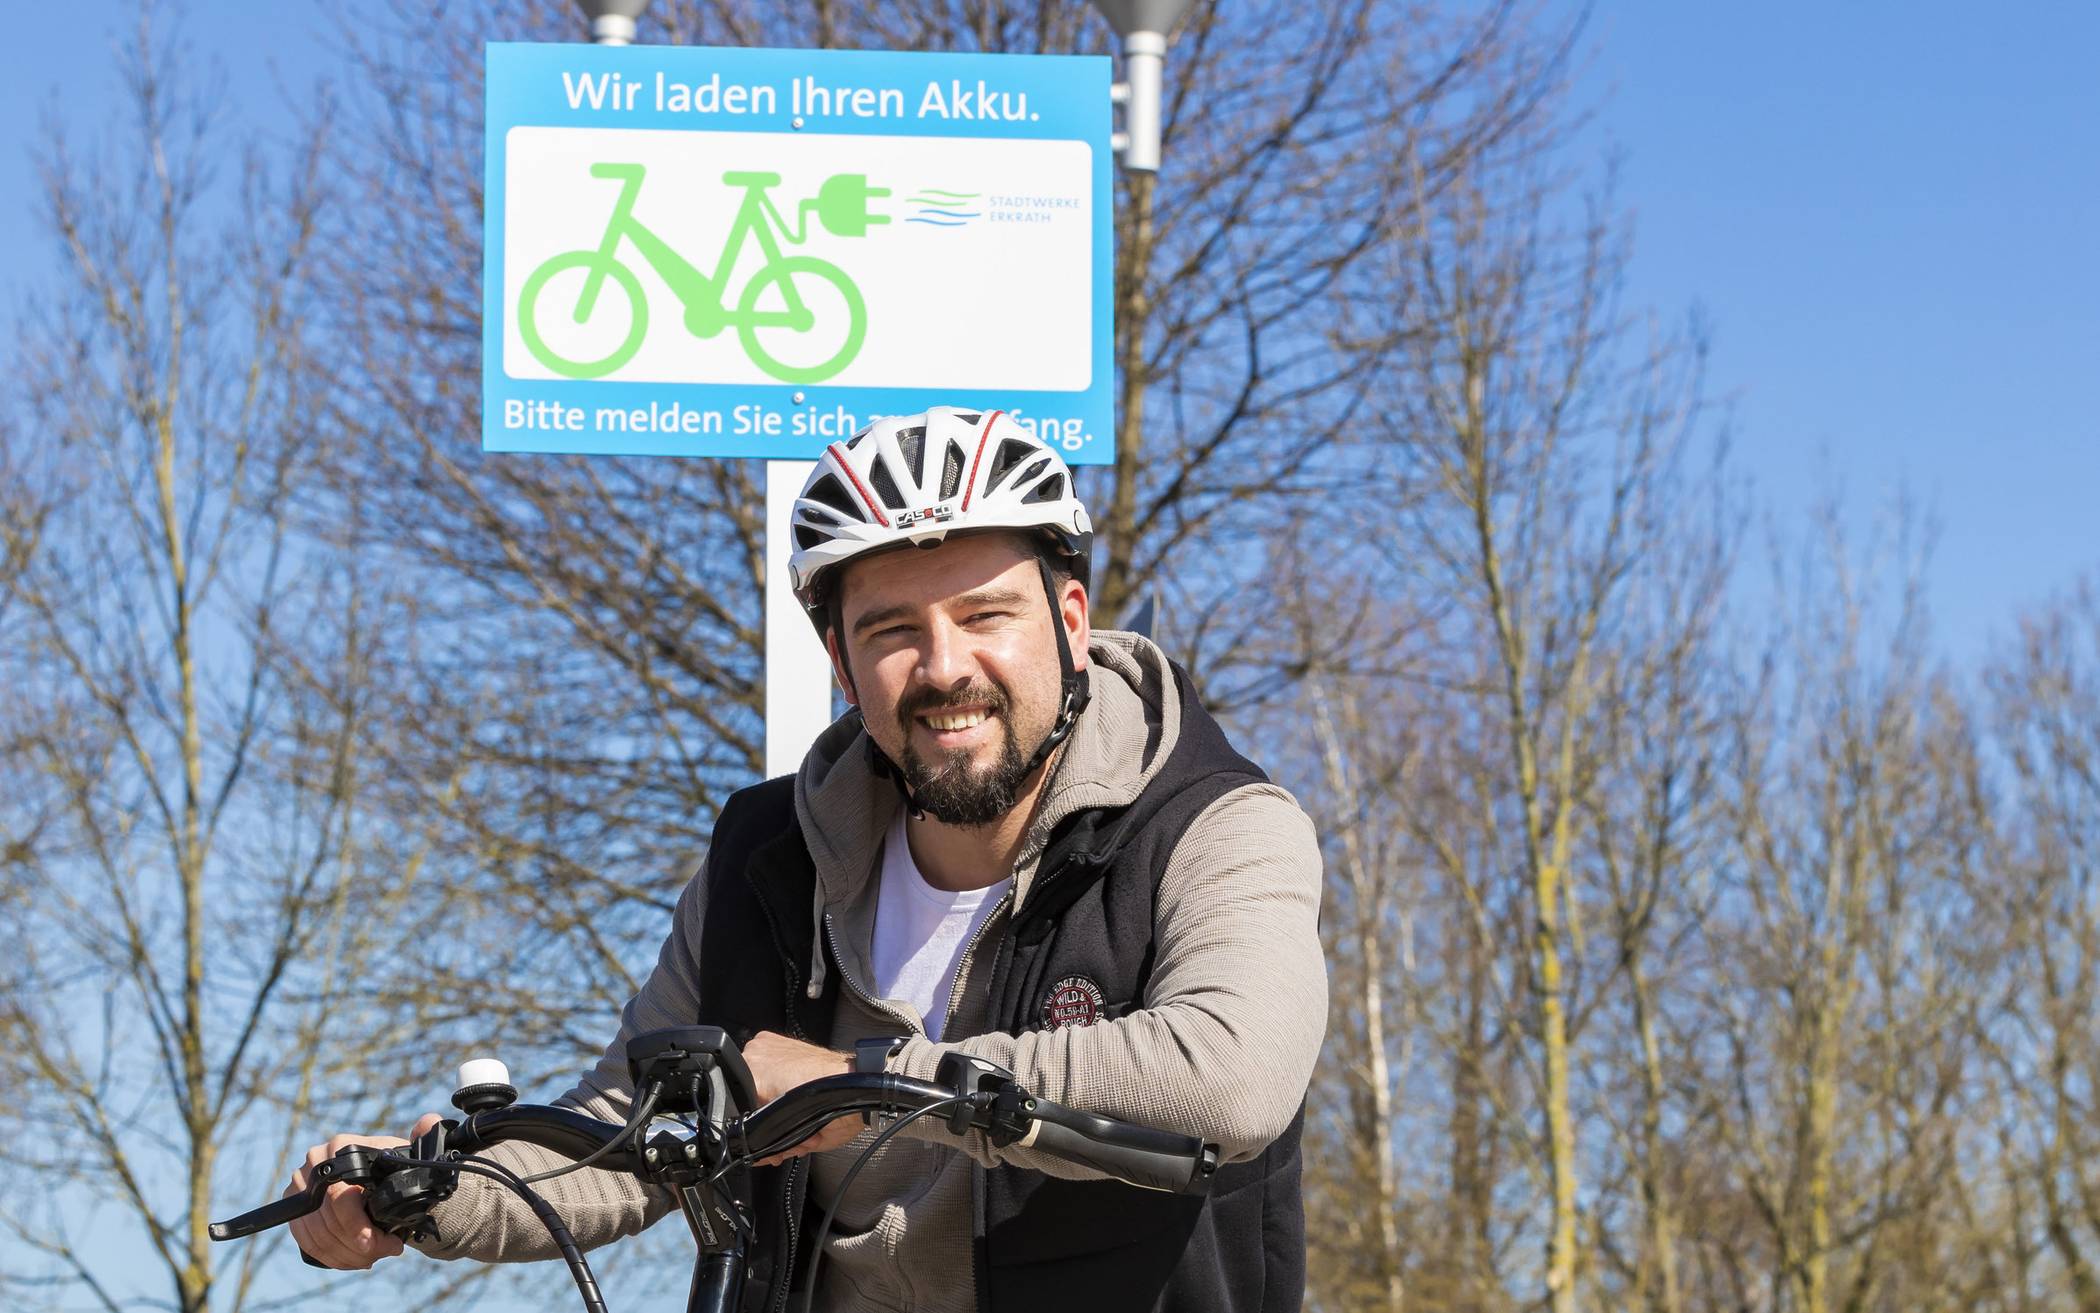 Stadtwerke Erkrath und Neanderbad bieten E-Bike-Lademöglichkeit an